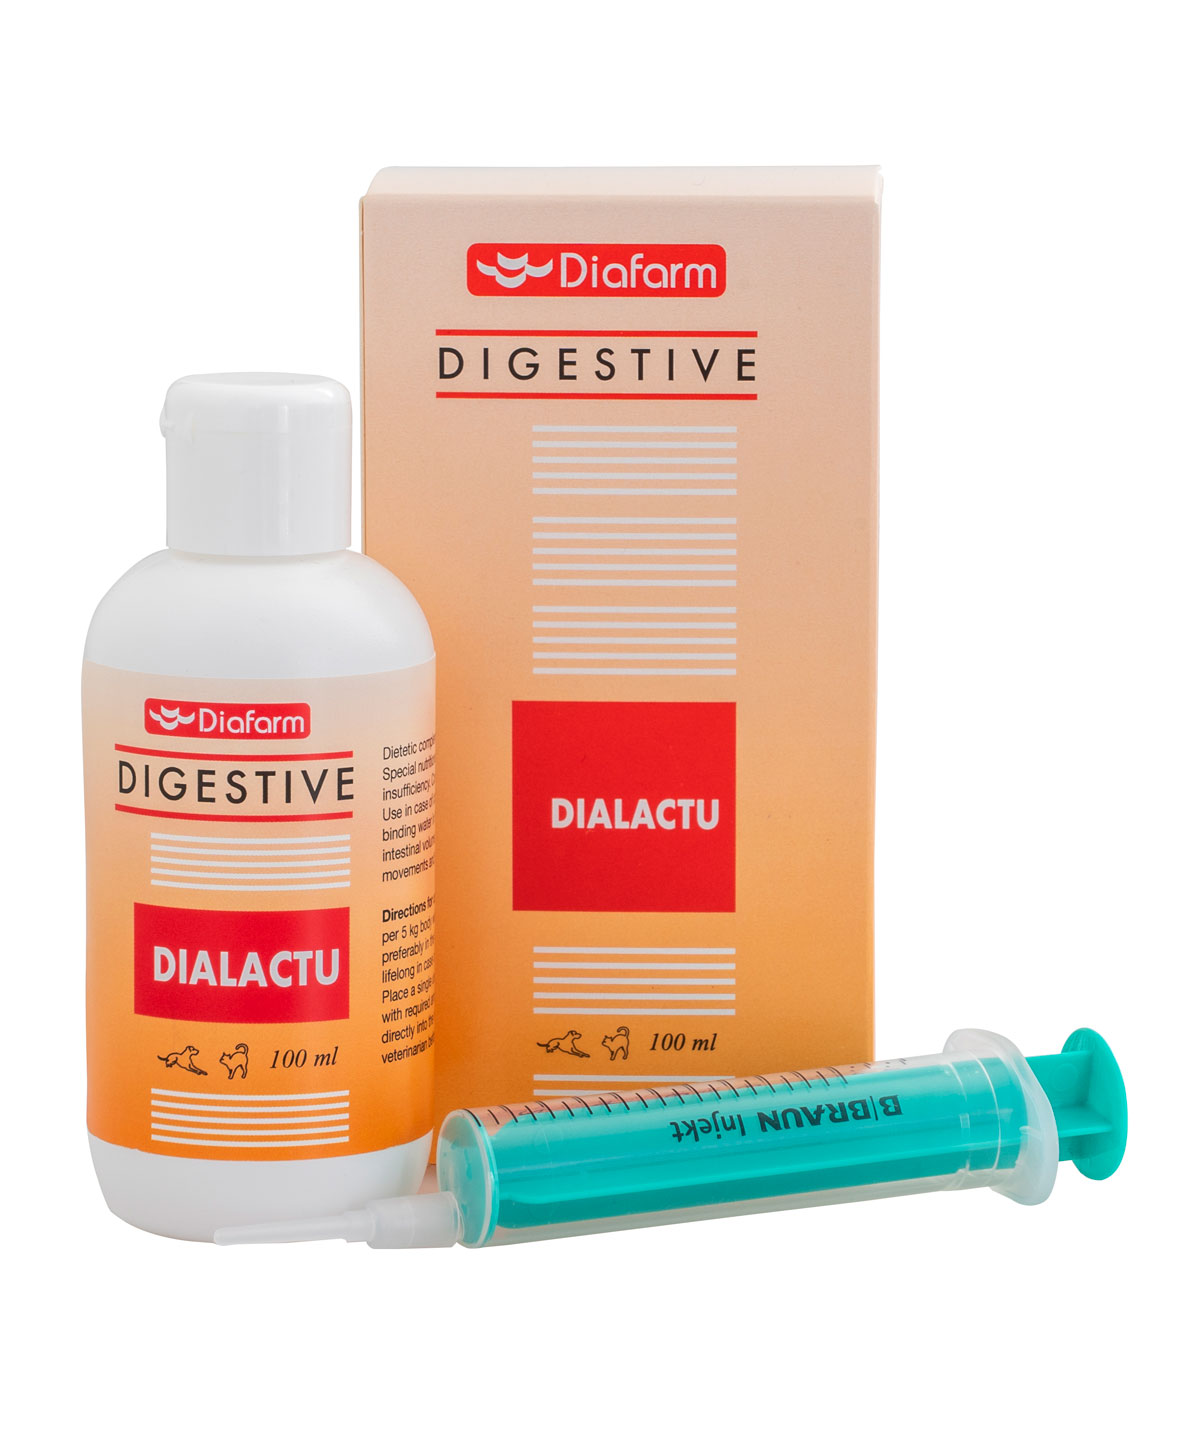 ST-56751-Digestive-Dialactu-2